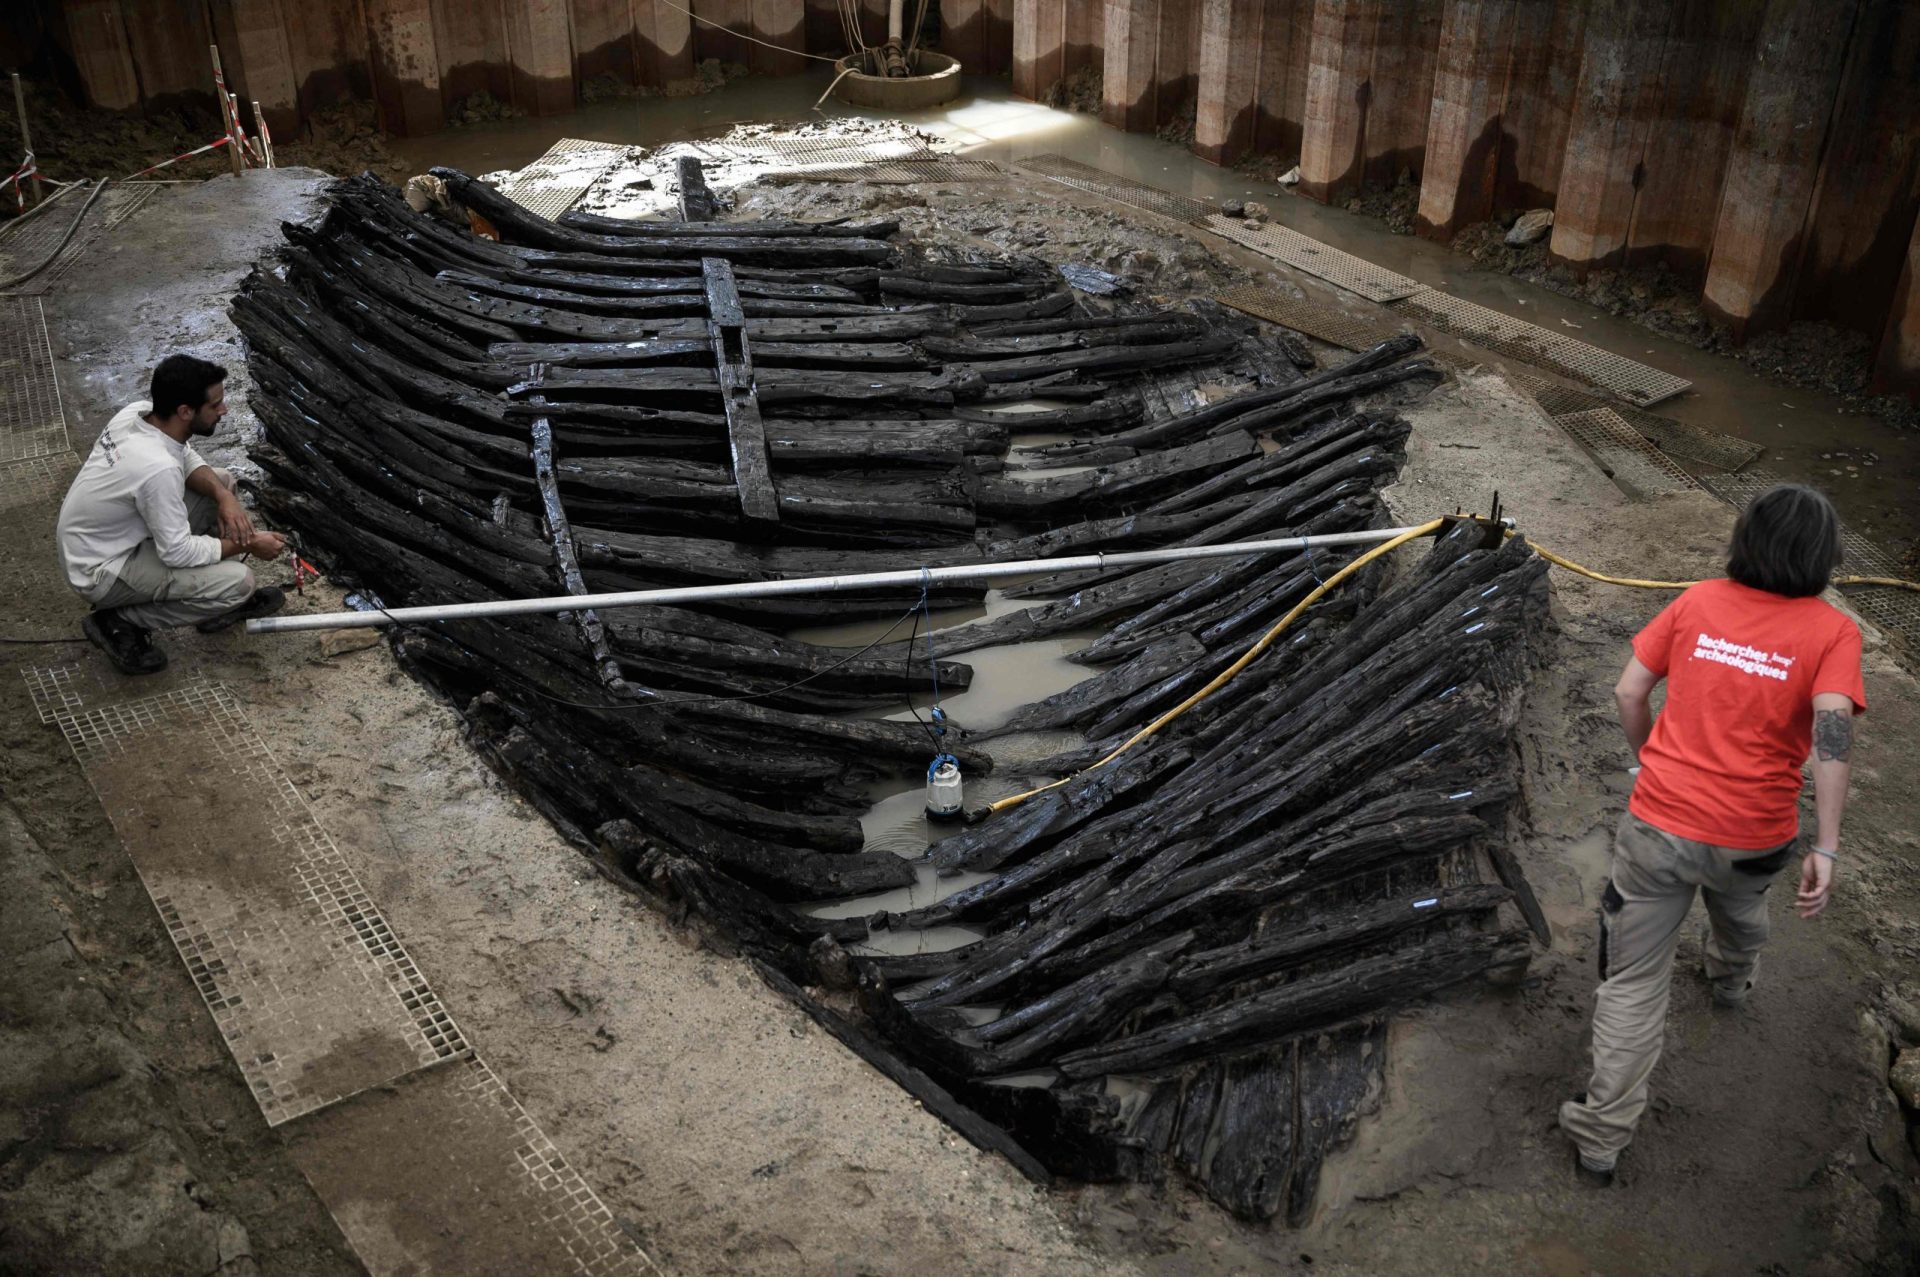 Arqueólogos desenterram navio com 1300 anos